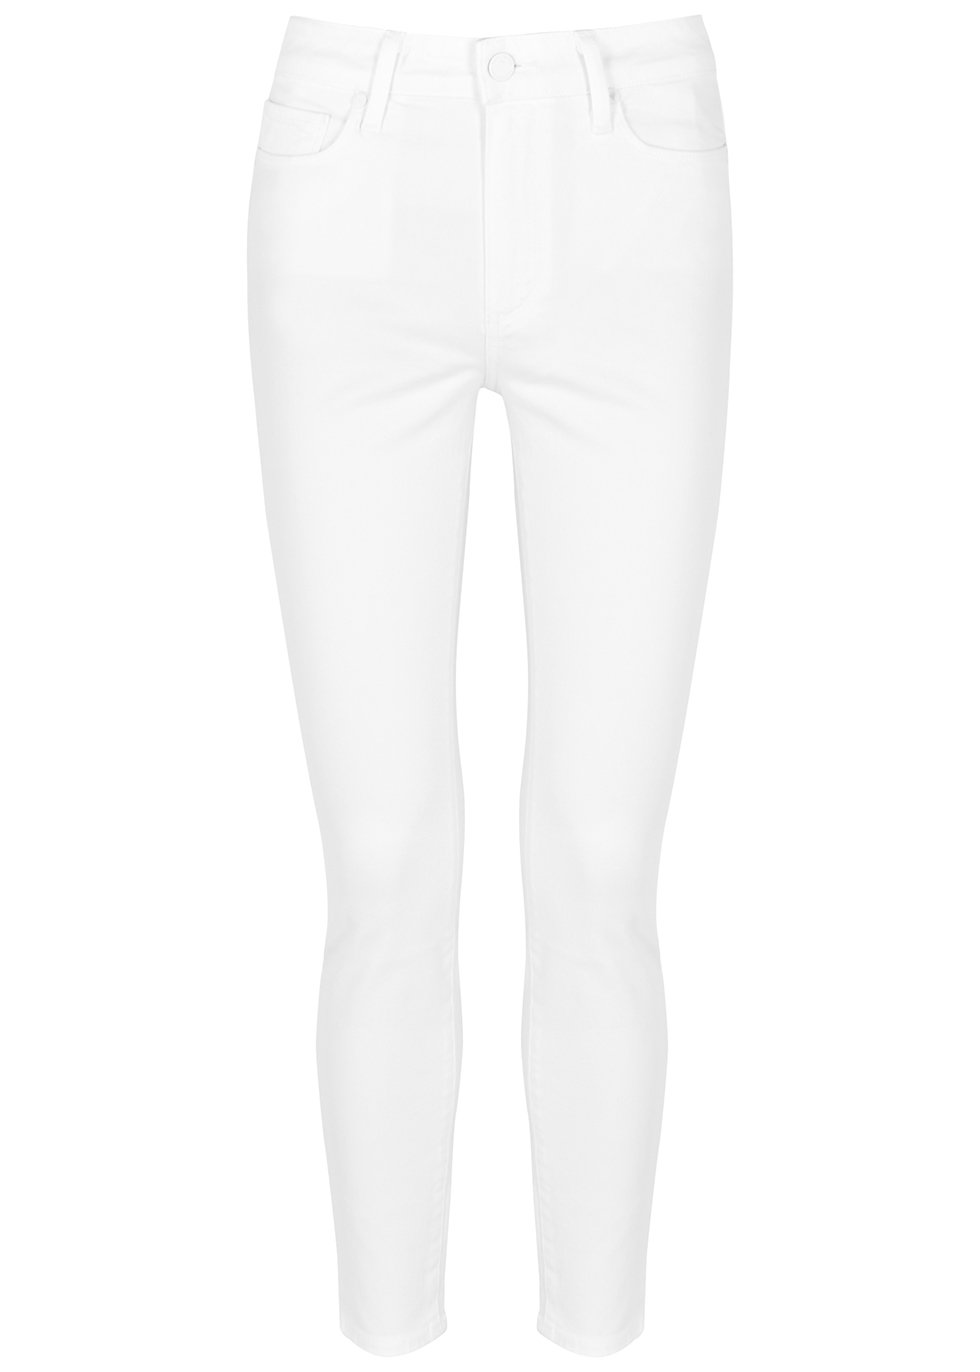 paige hoxton white jeans